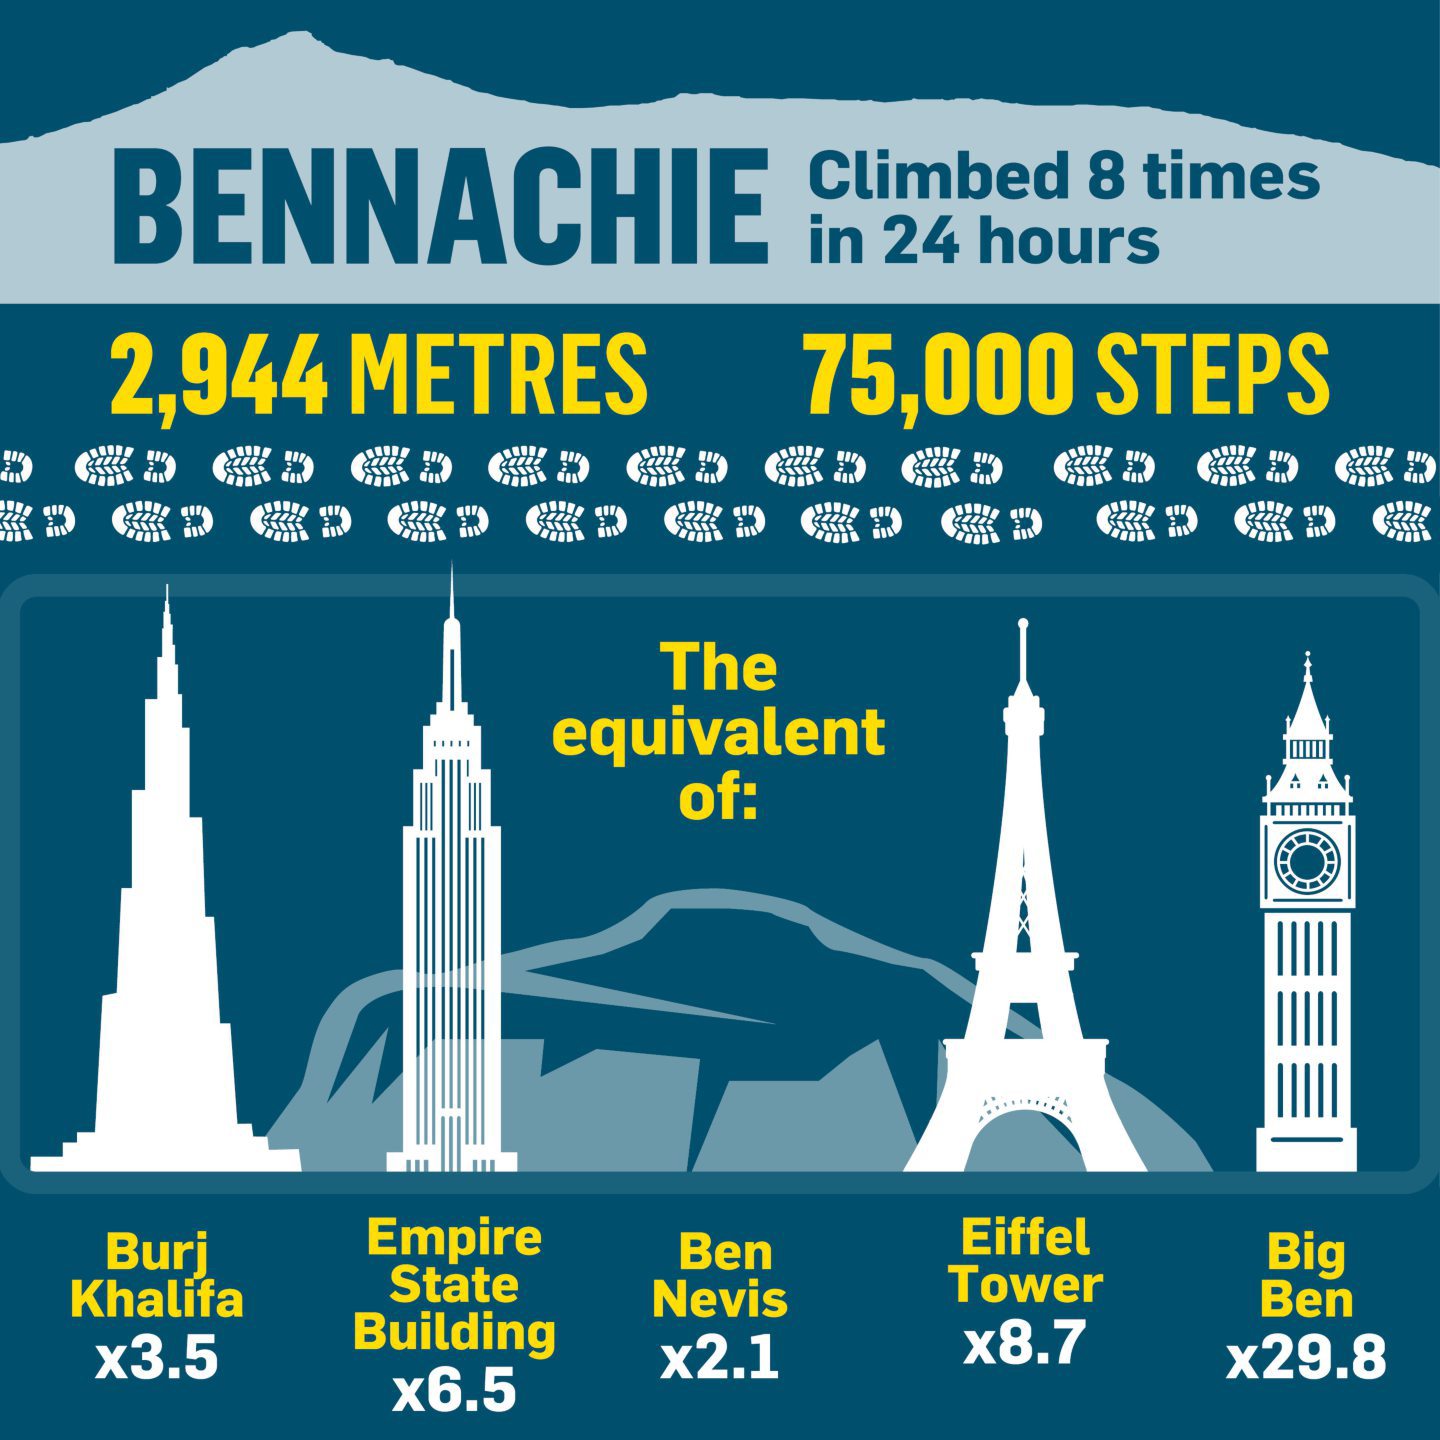 A track of the 24-hour Bennachie climb